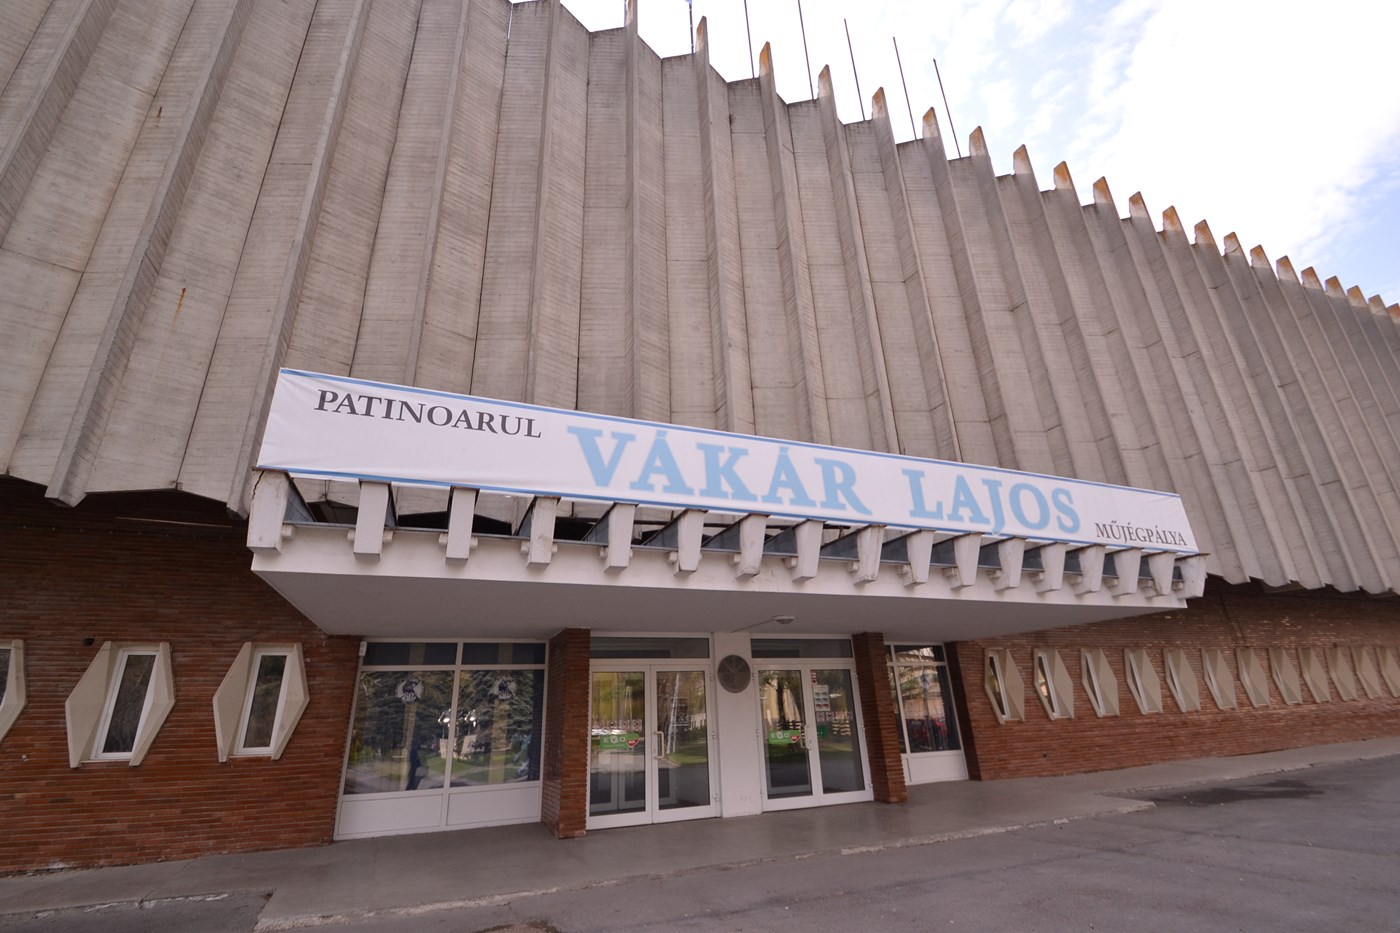 Lajos Vakar-hallen i Miercurea Ciuc, hvor det danske landshold spillede VM i 1972